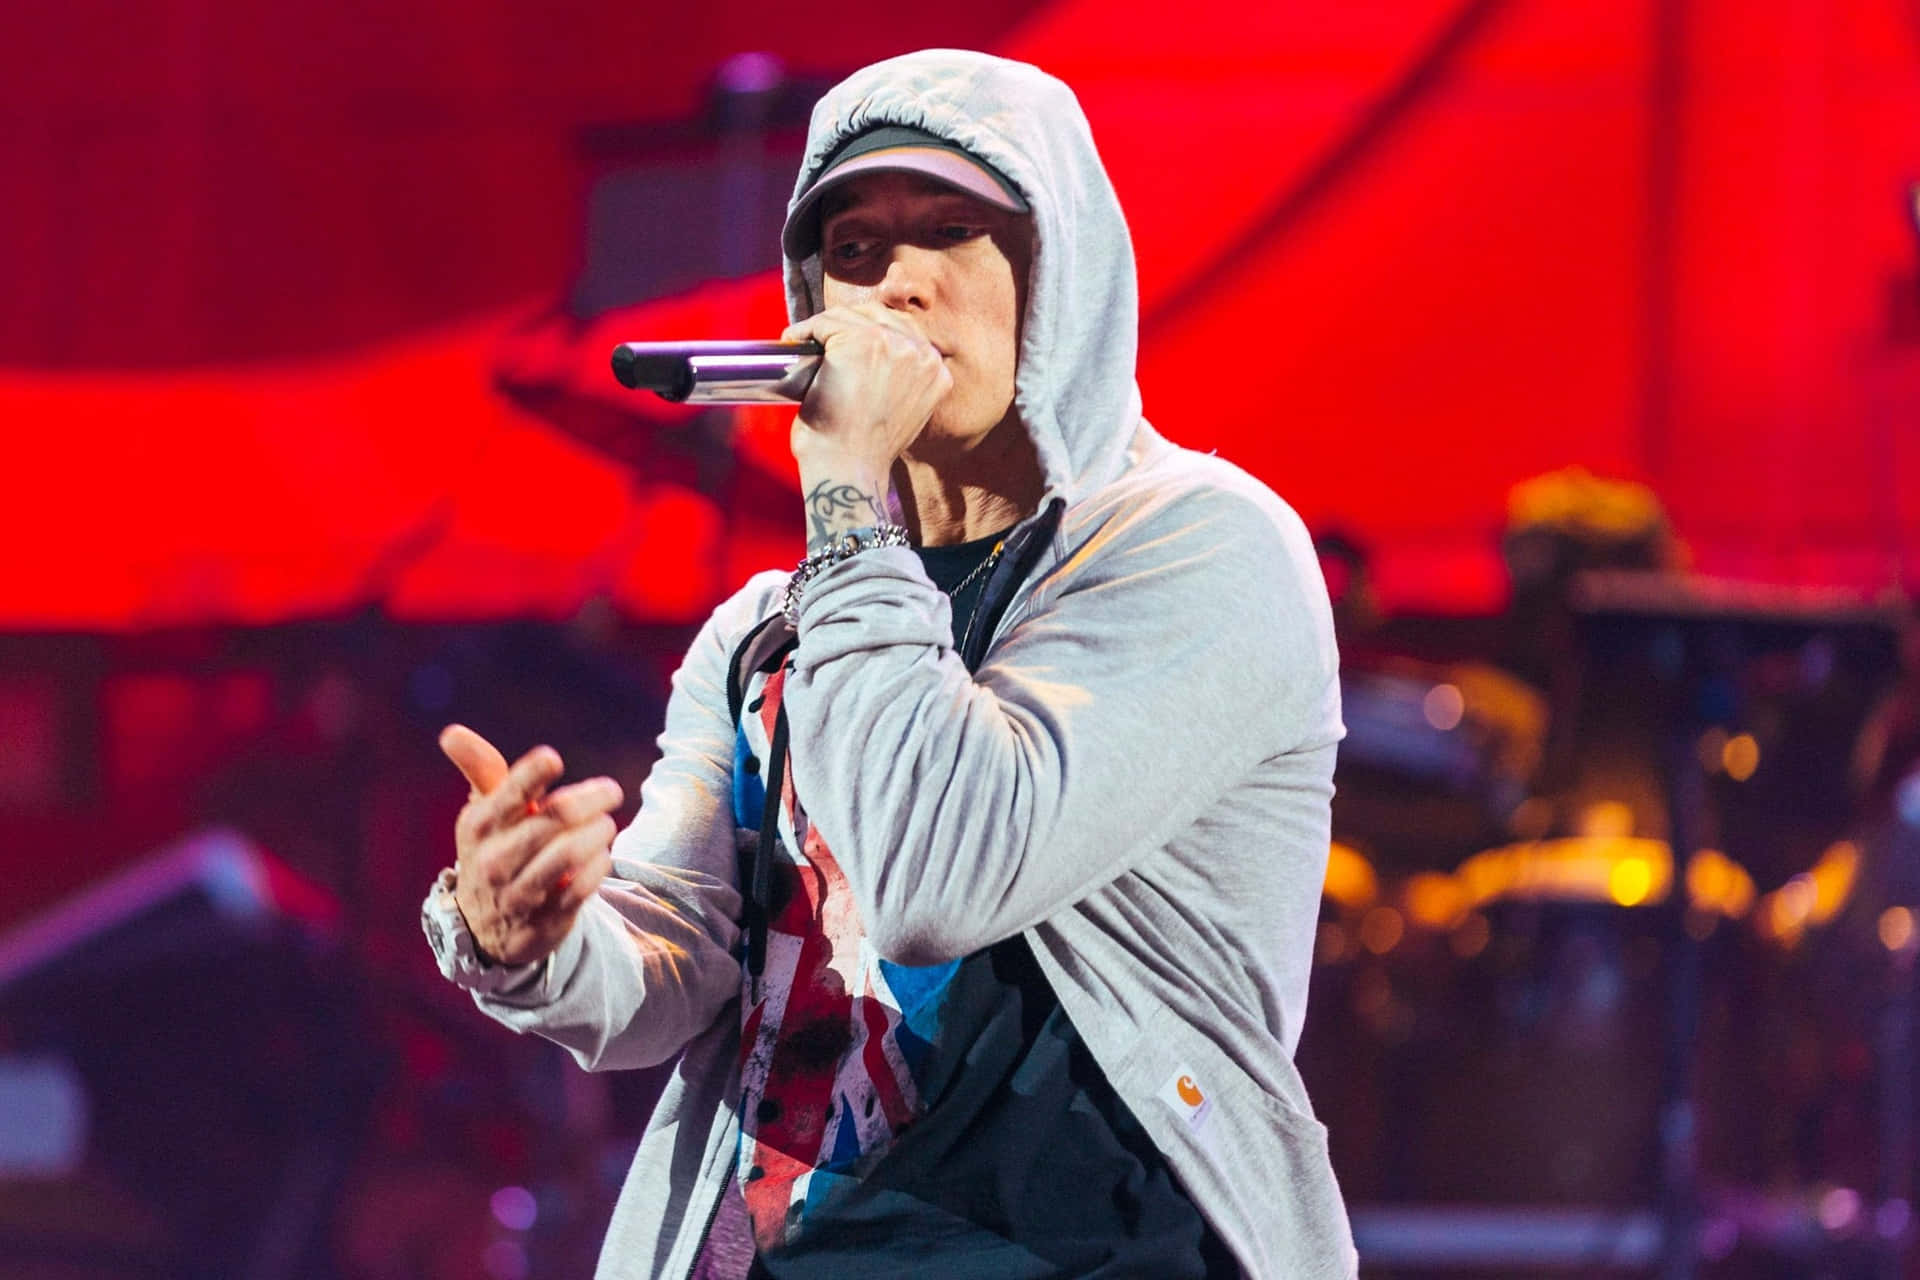 Eminembillede På 2465 X 1643 Pixel.